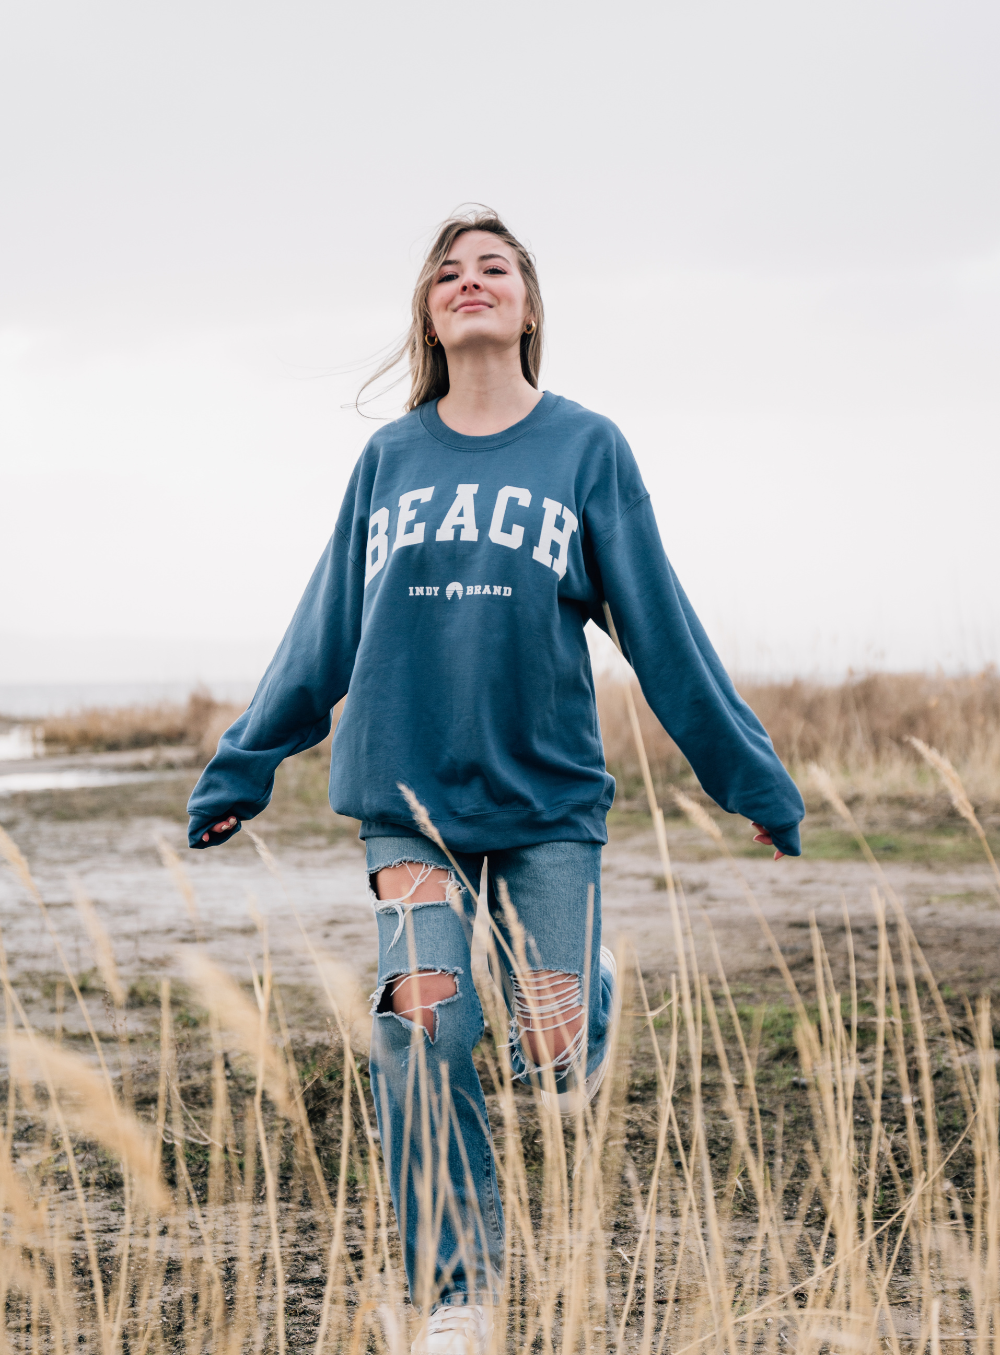 Beach Sweatshirt